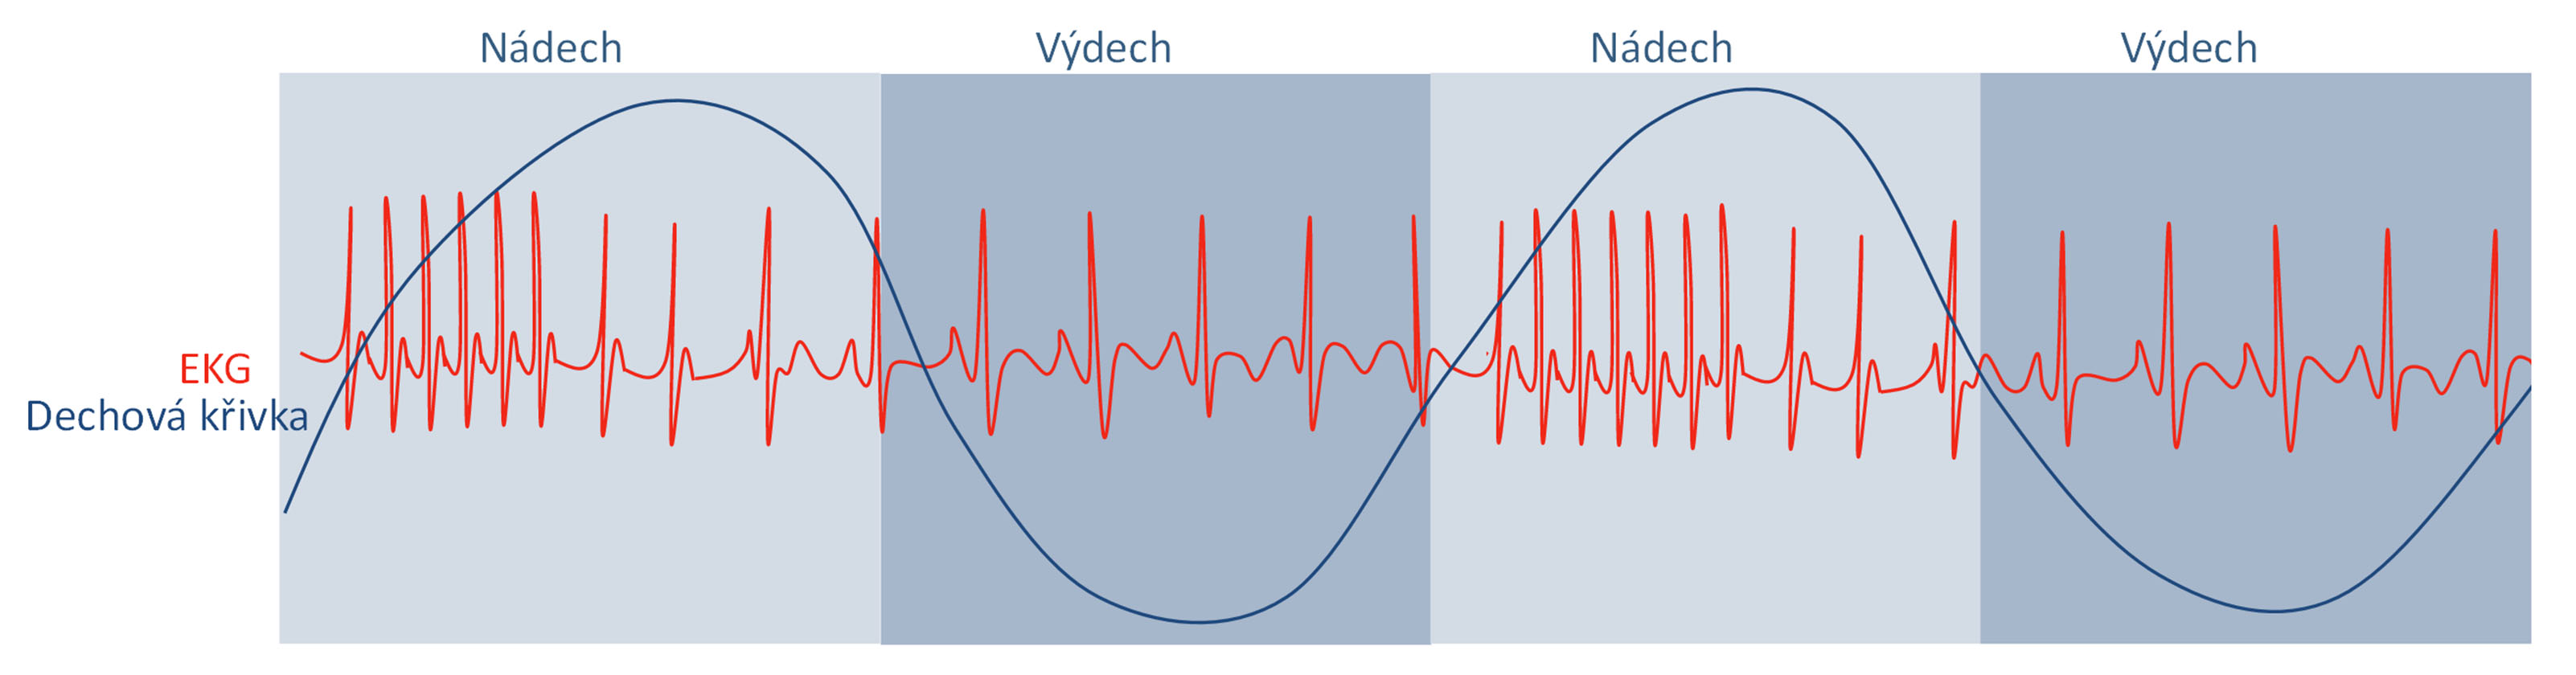 Dechová arytmie – kolísání tepové frekvence (délky R-R intervalu) při střídání nádechu a výdechu.